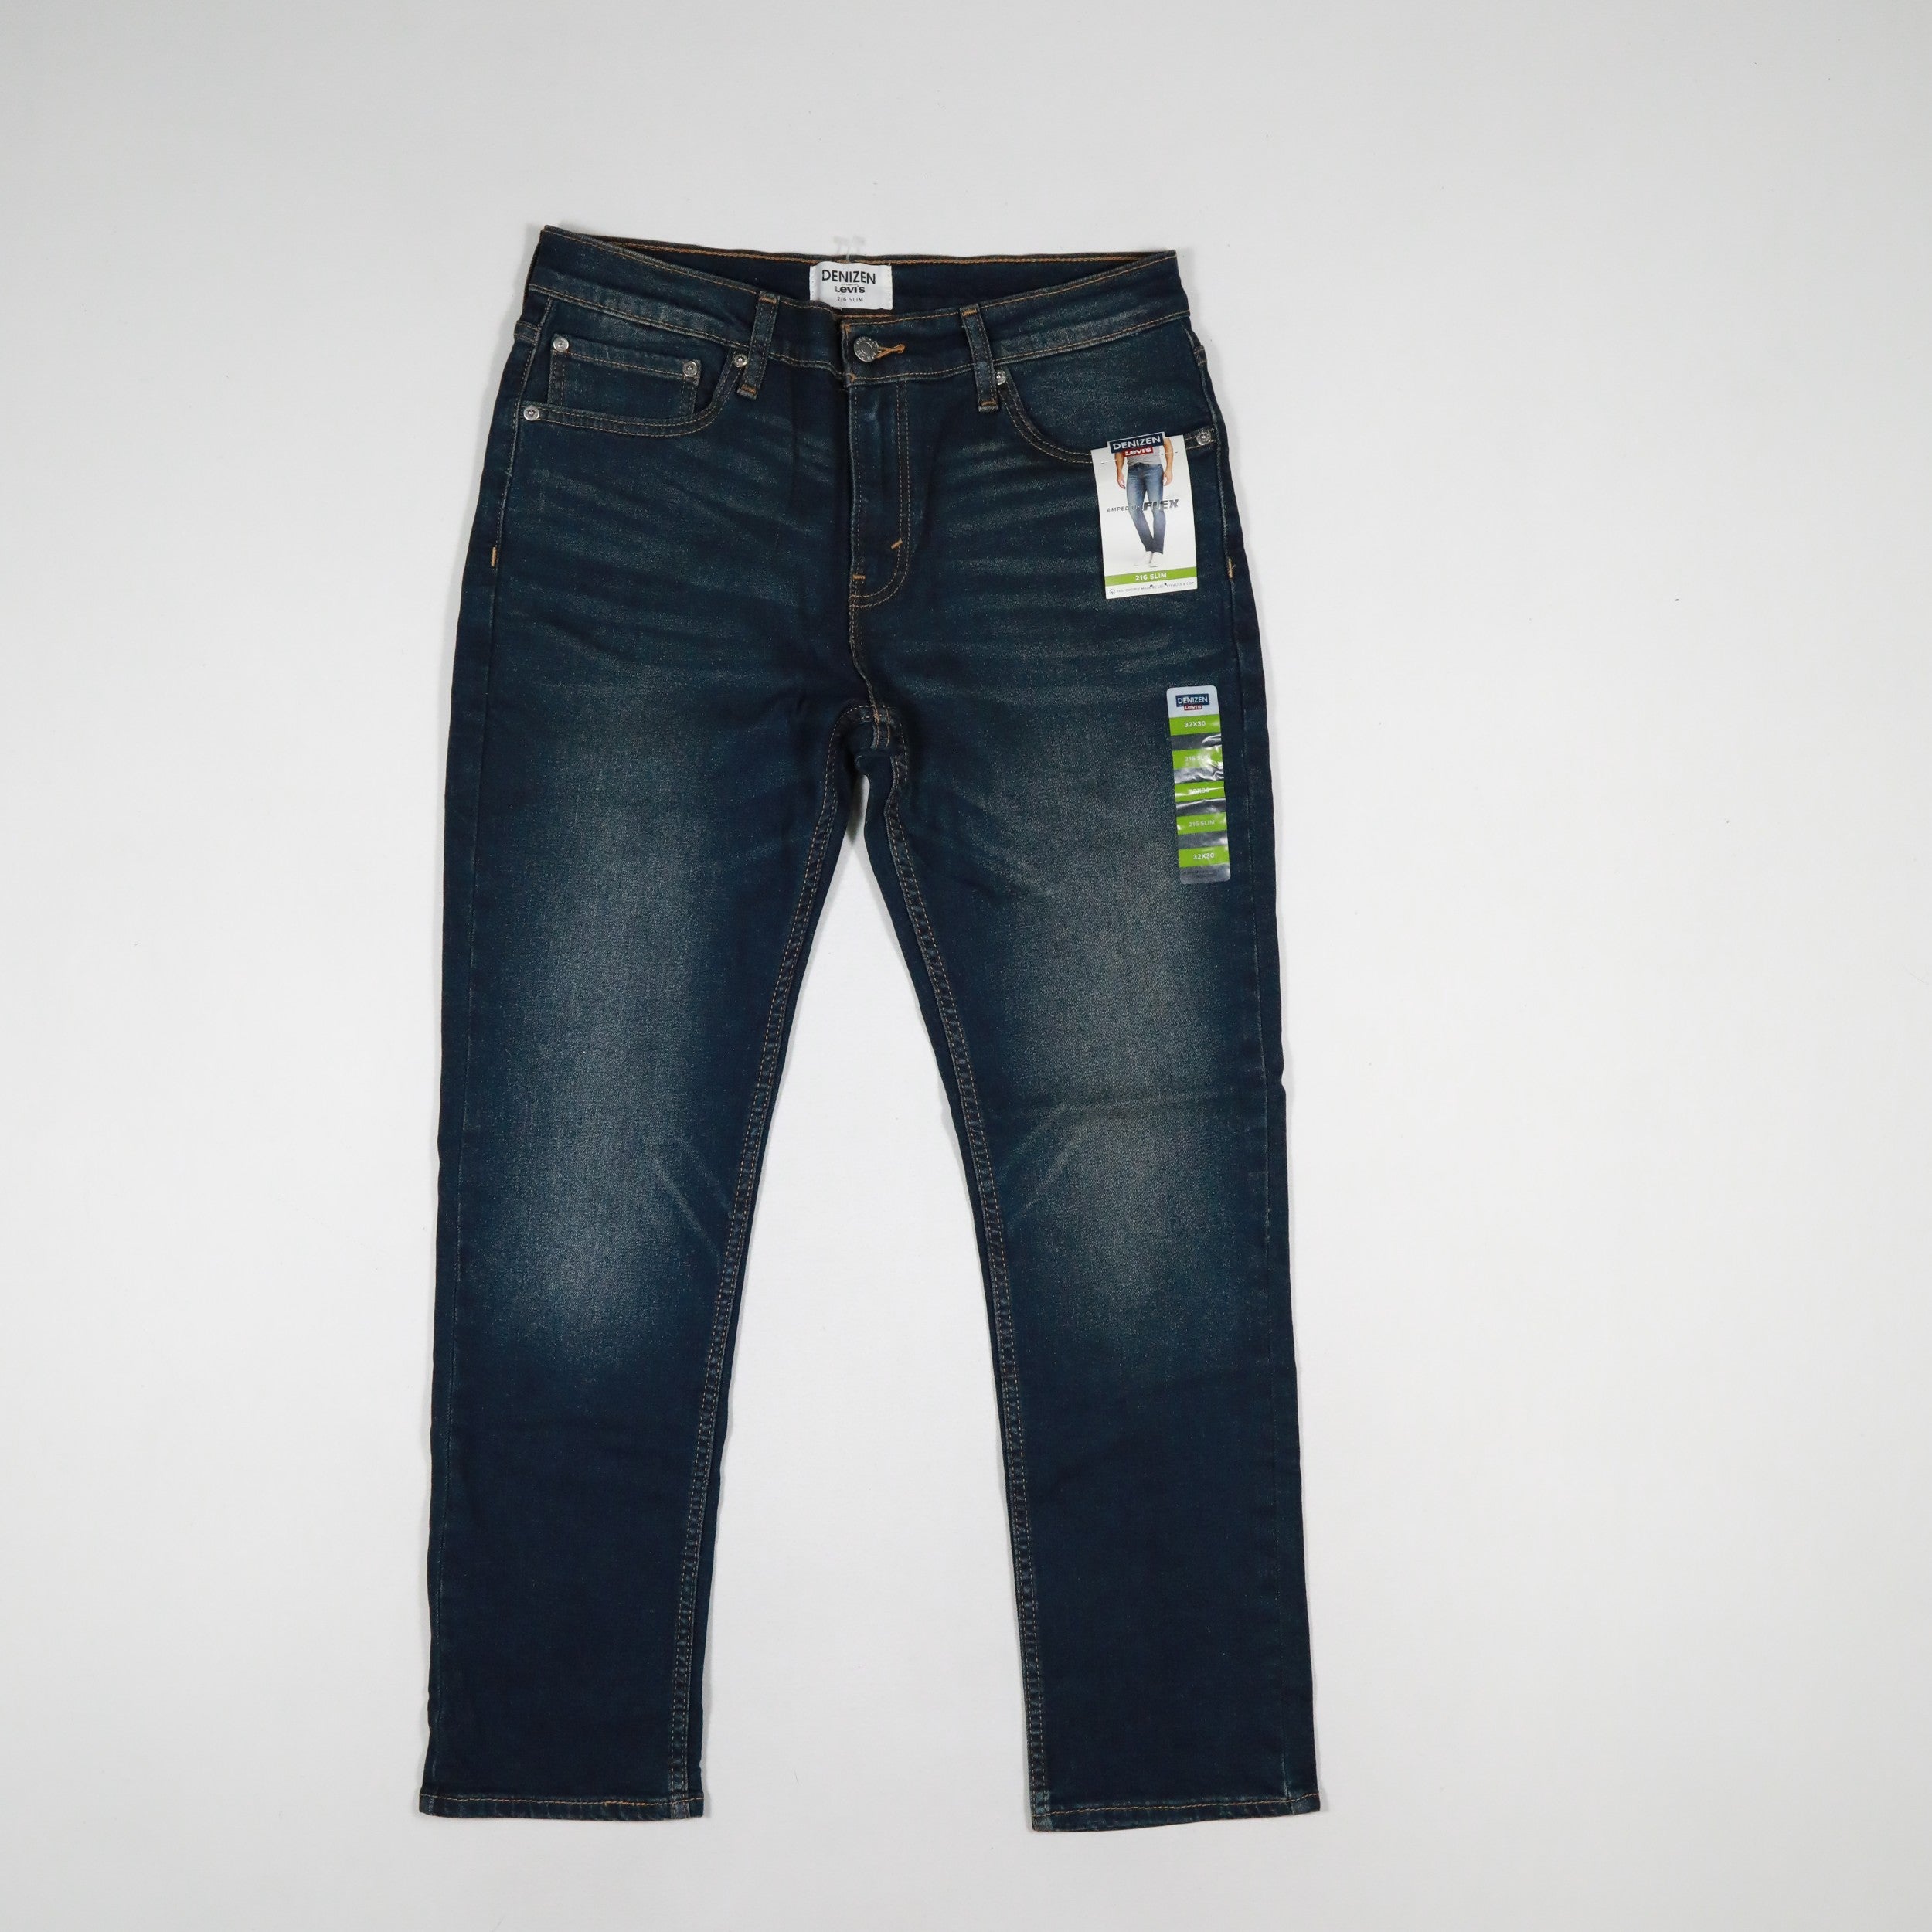 Levi's Men's Slim Jeans Size:30 X 32 Blue